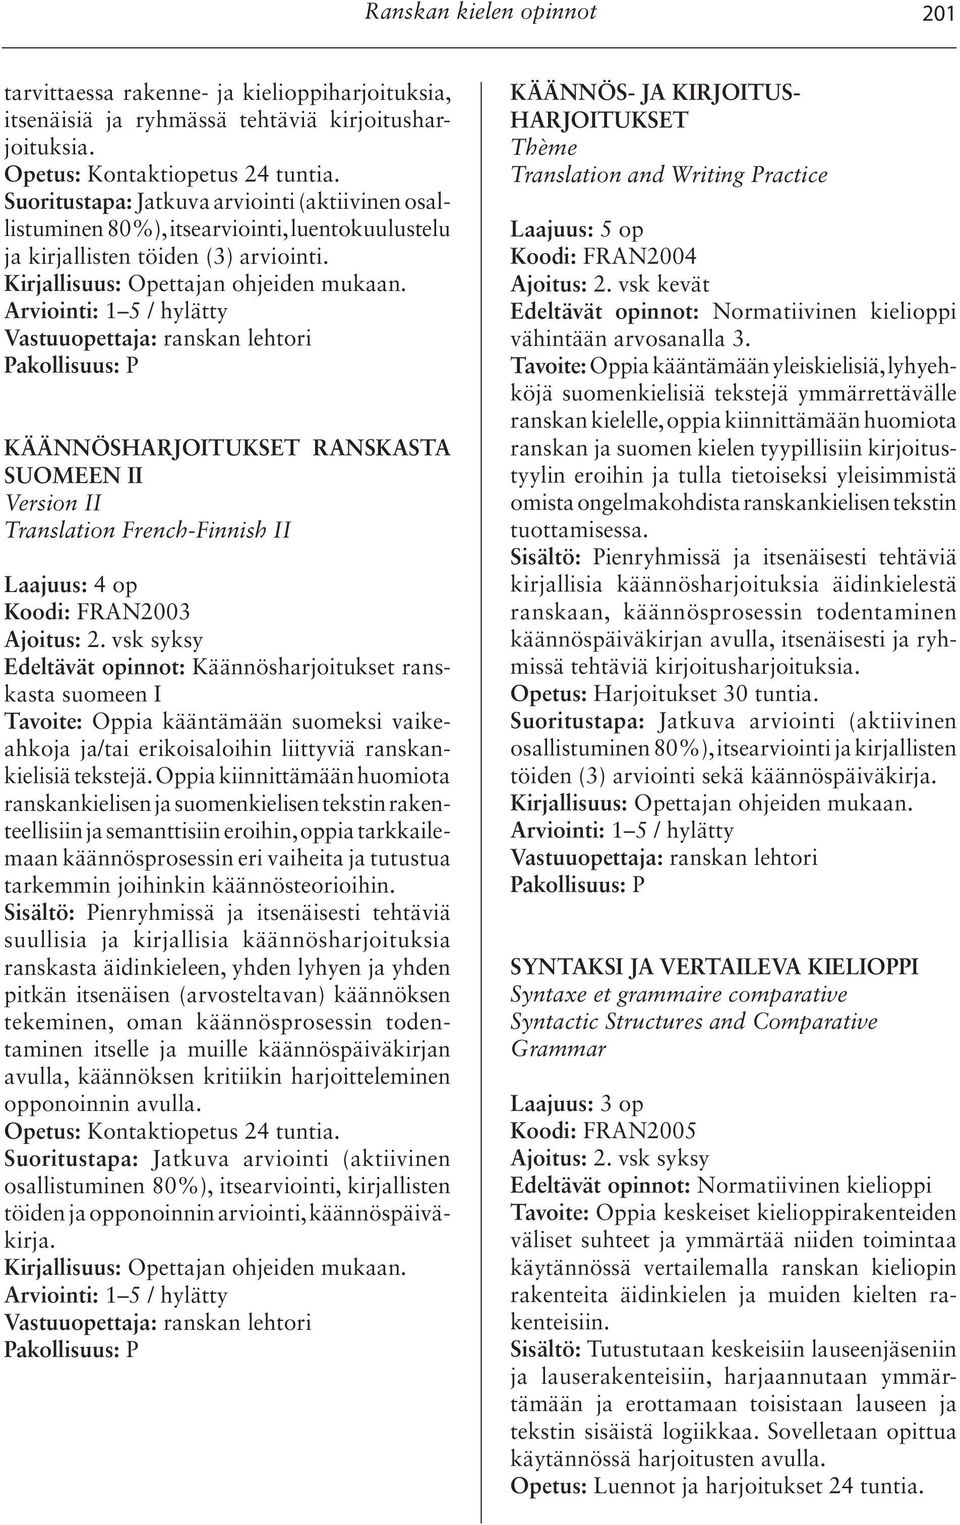 KÄÄNNÖSHARJOITUKSET RANSKASTA SUOMEEN II Version II Translation French-Finnish II Laajuus: 4 op Koodi: FRAN2003 Ajoitus: 2.